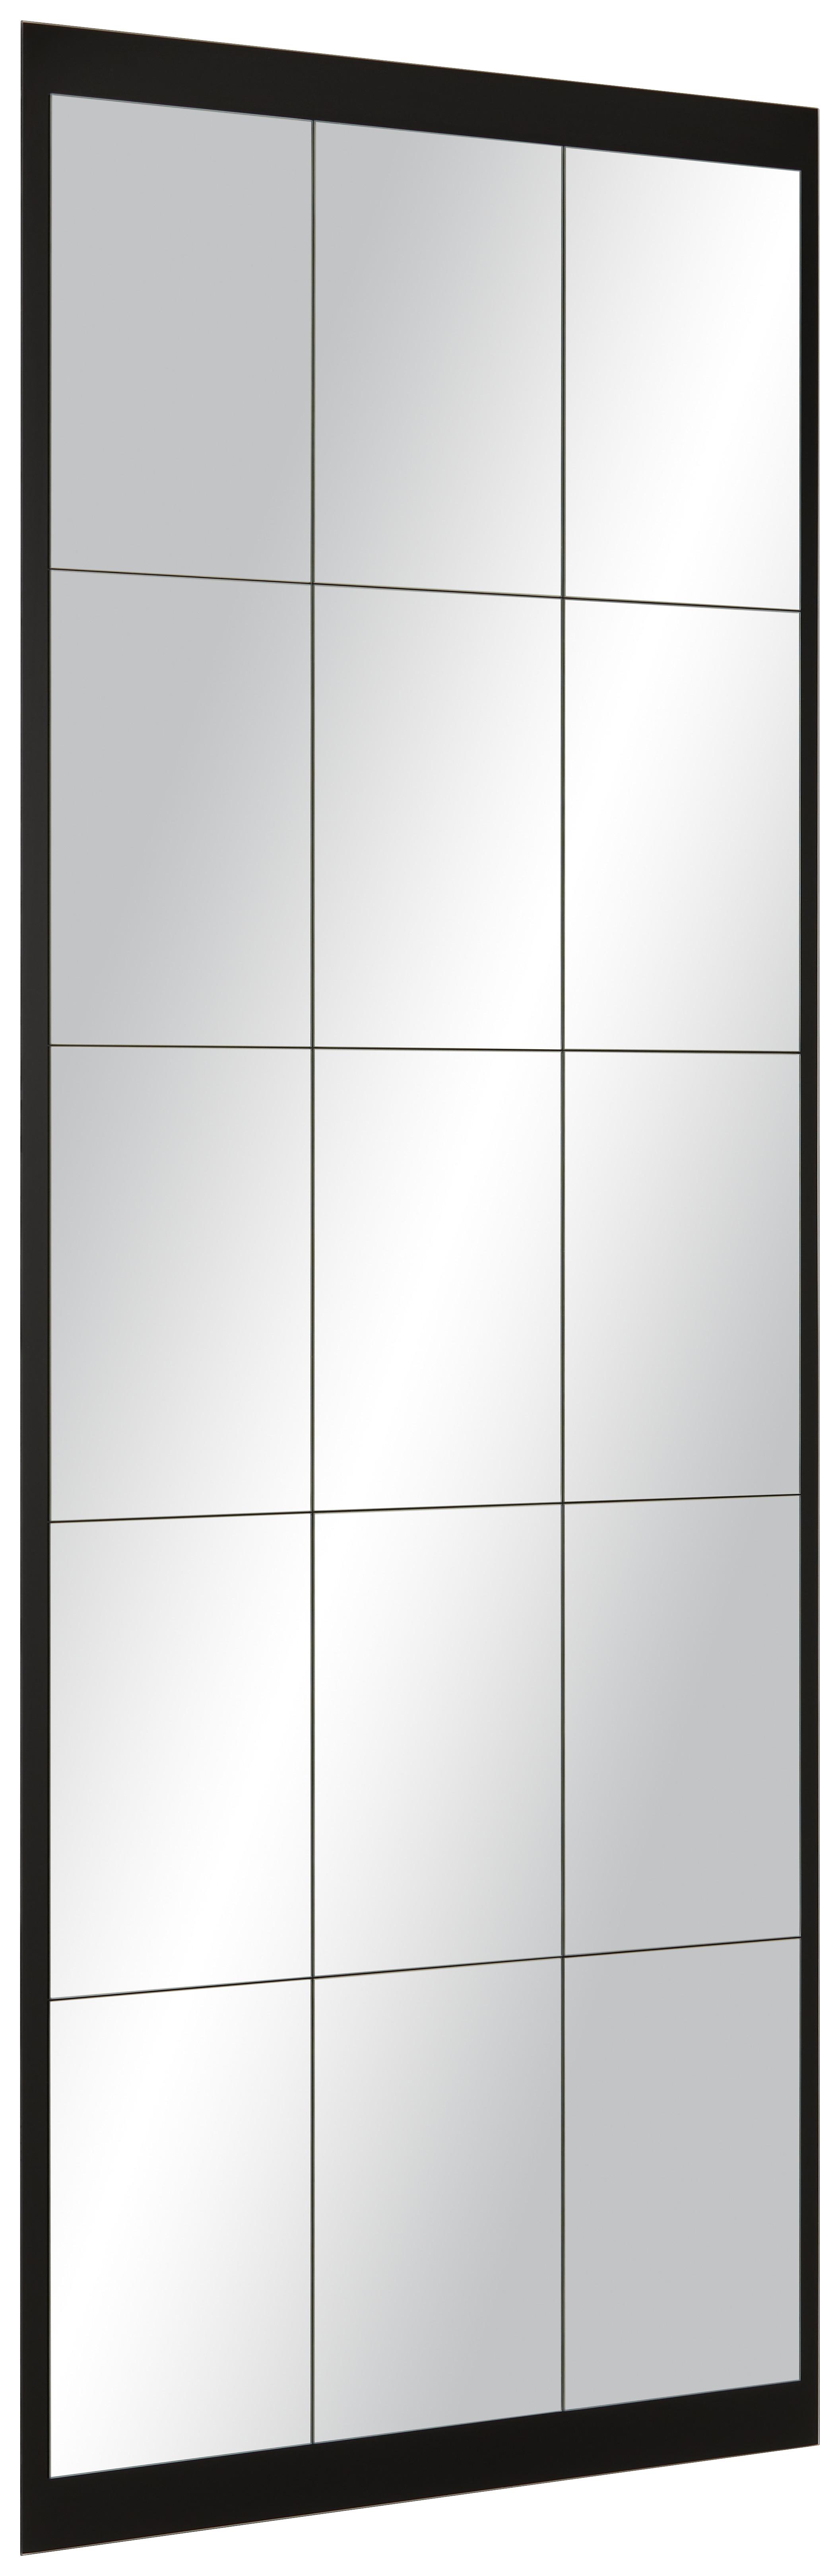 Wandspiegel in Schwarz - Schwarz, MODERN, Glas (64/170cm) - Modern Living